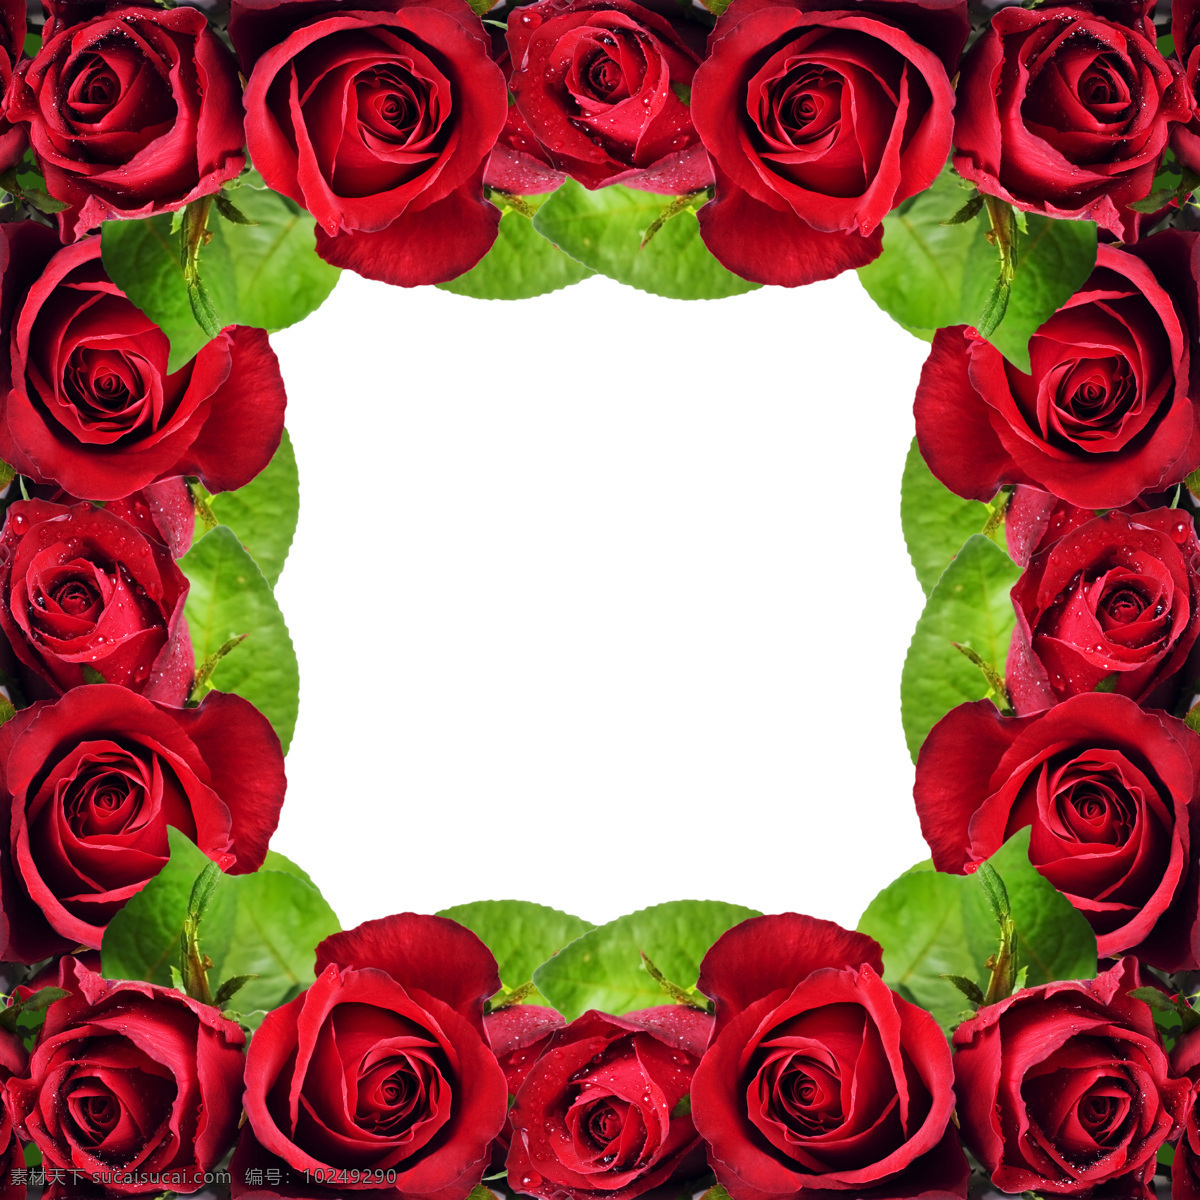 玫瑰花 边框 素材图片 红玫瑰 漂亮花朵 花朵 爱情 情人节 高清图片 花边 绿叶 花草树木 生物世界